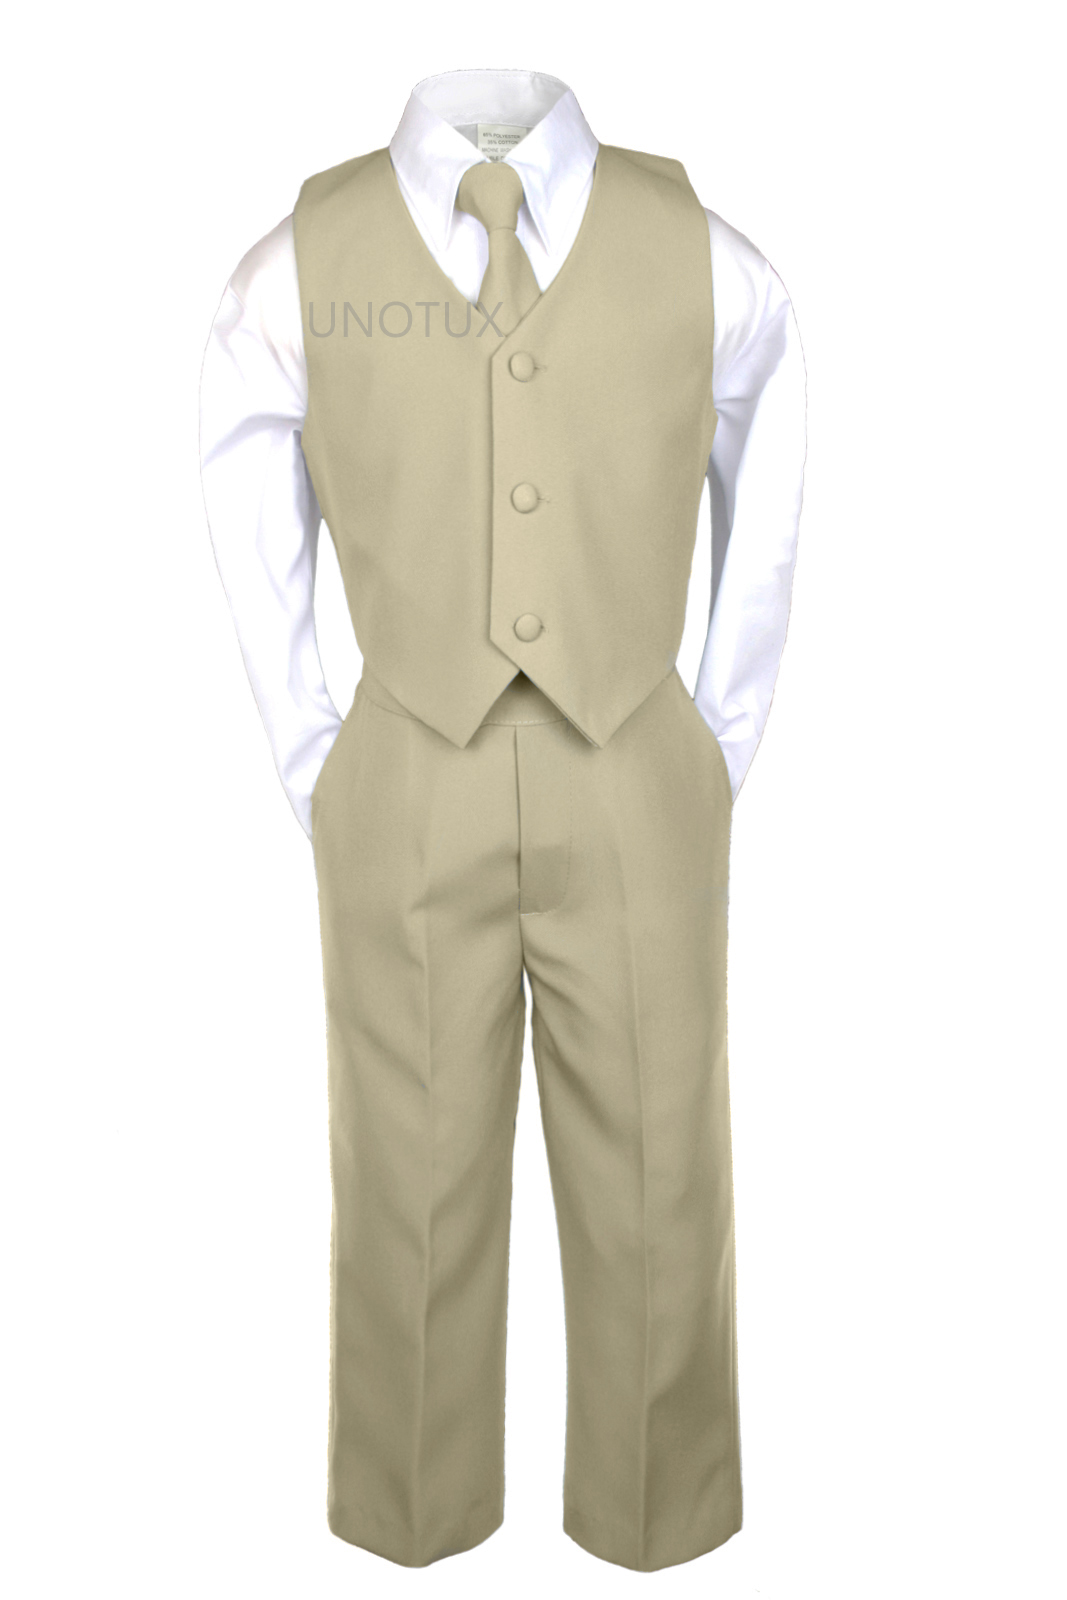 Unotux S M L XL 2T 3T 4T 7pc Mustard Satin Necktie & Vest + Baby Infant Toddler Formal Wedding Party Khaki Boy Suit